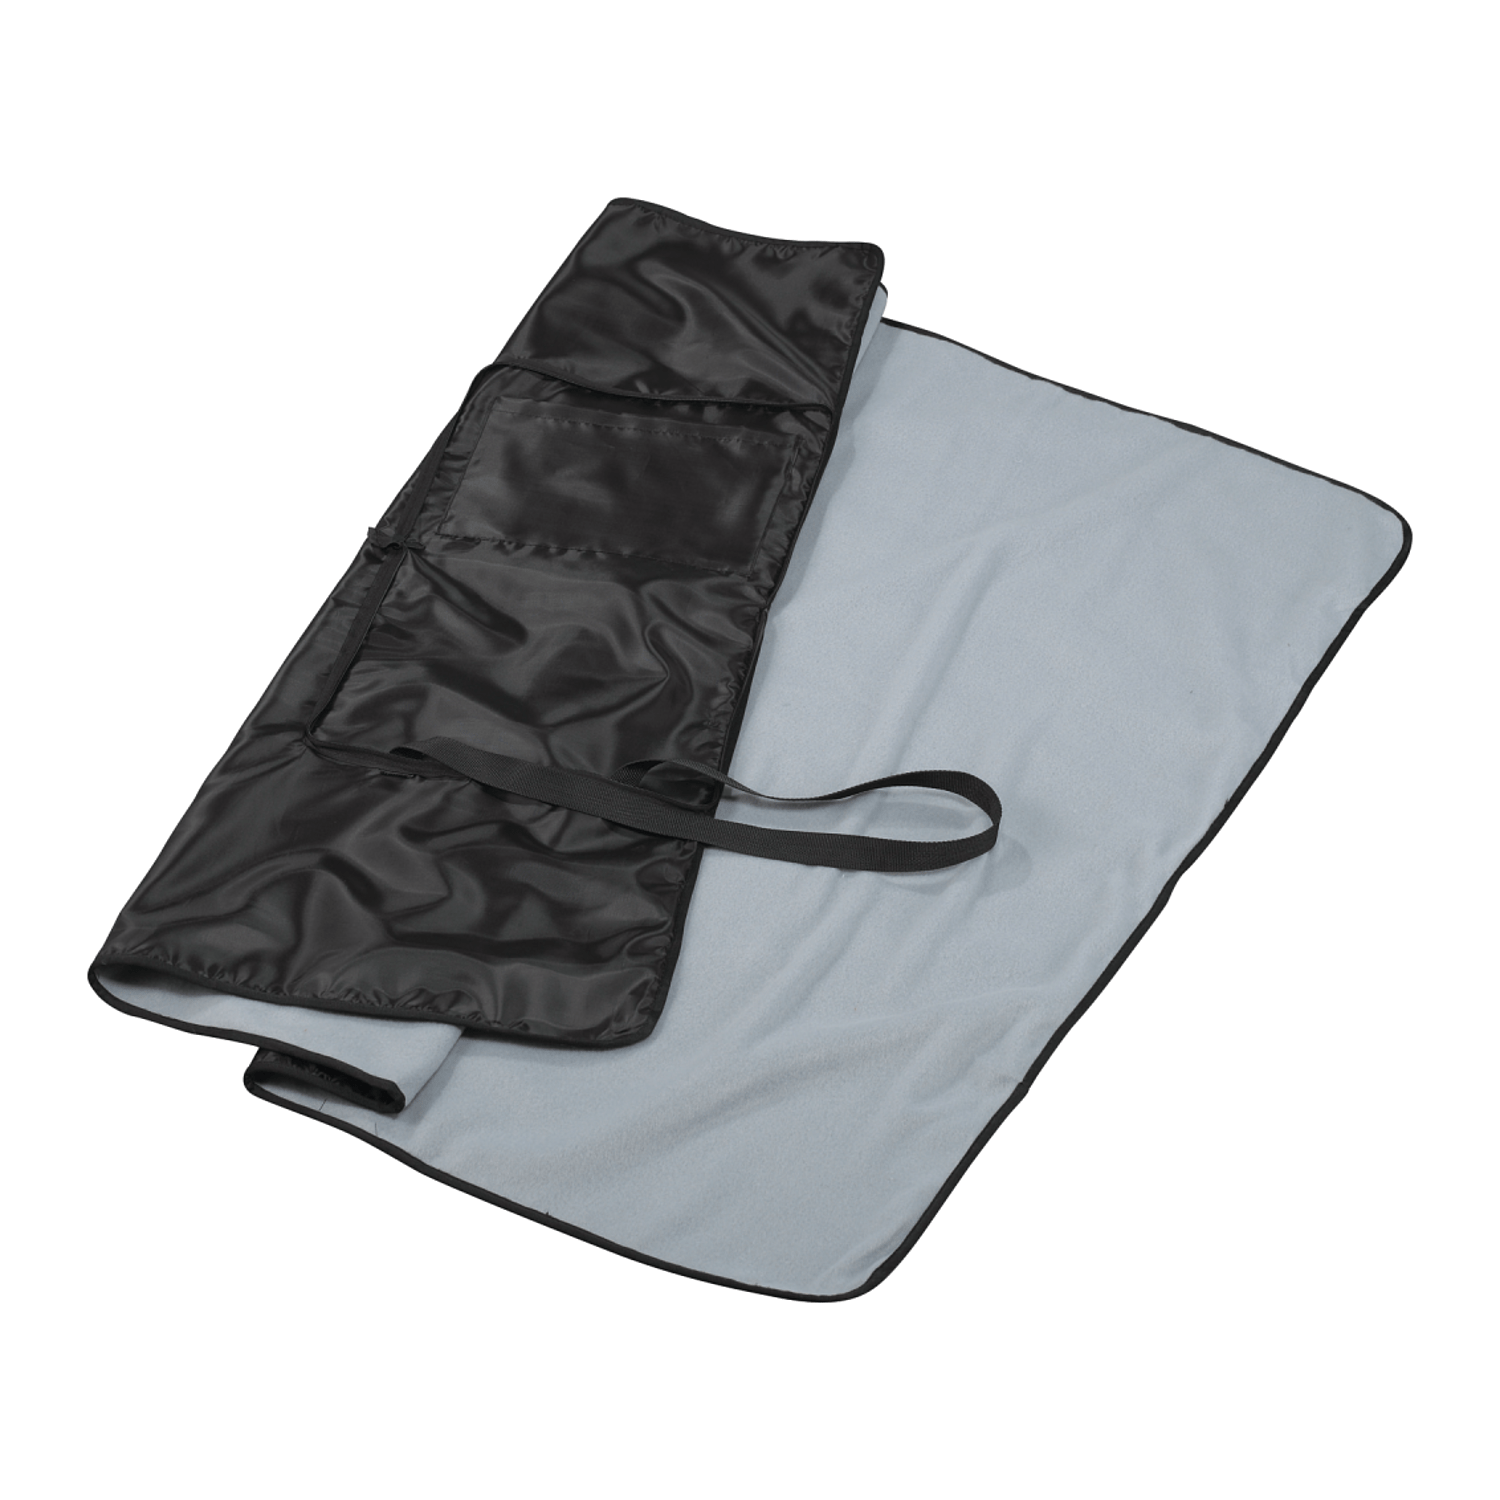 Threadfellows Accessories One Size / Black/Grey Game Day Stadium Blanket